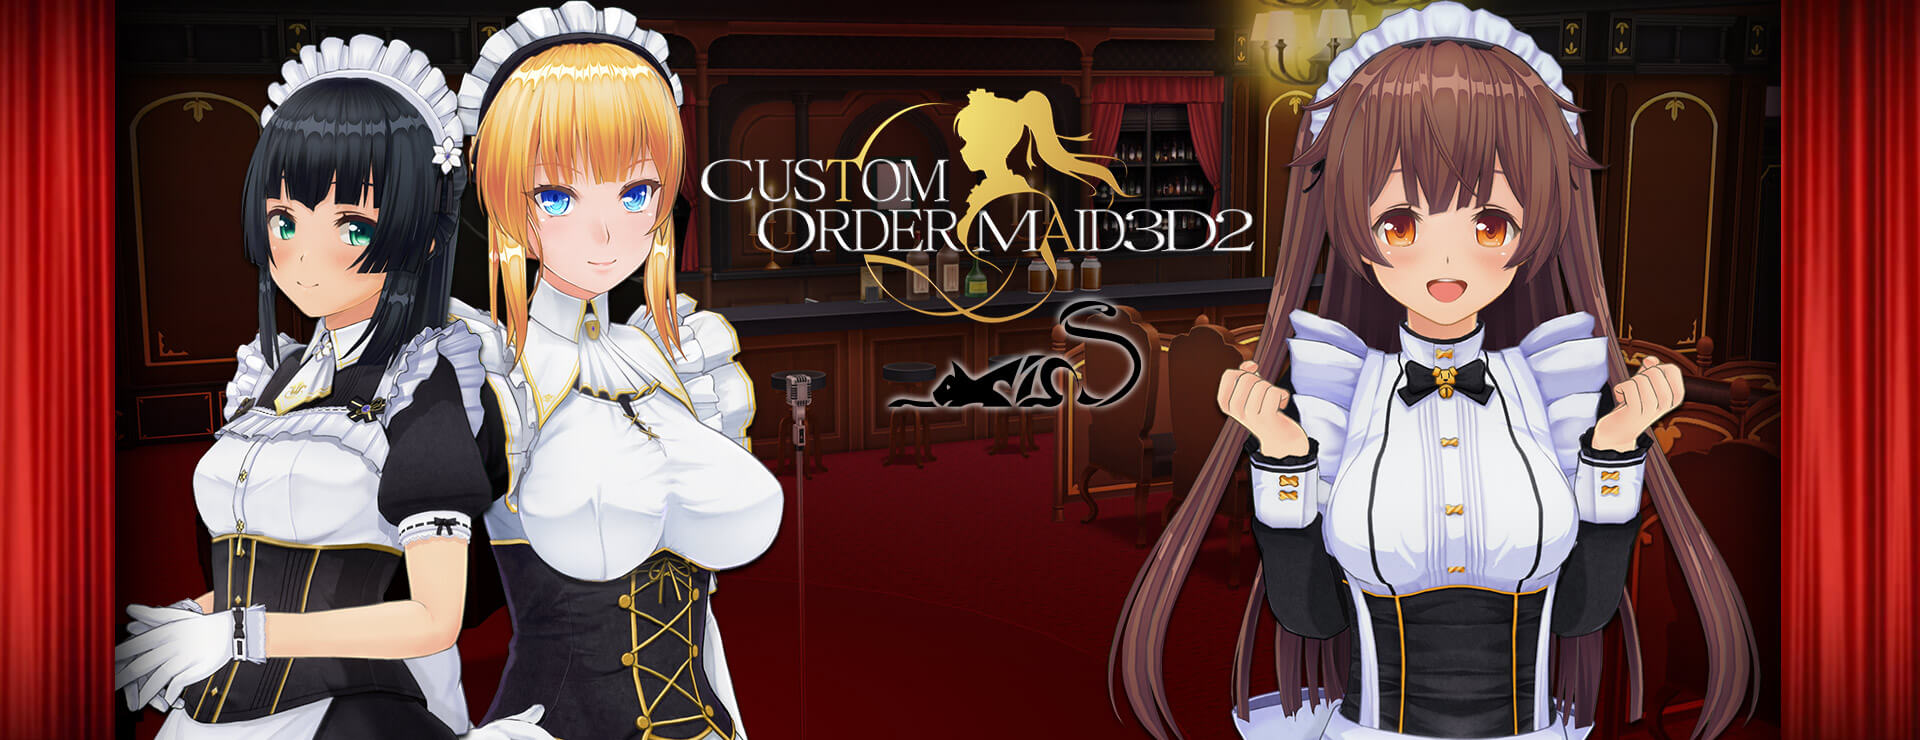 Custom order maid steam фото 105